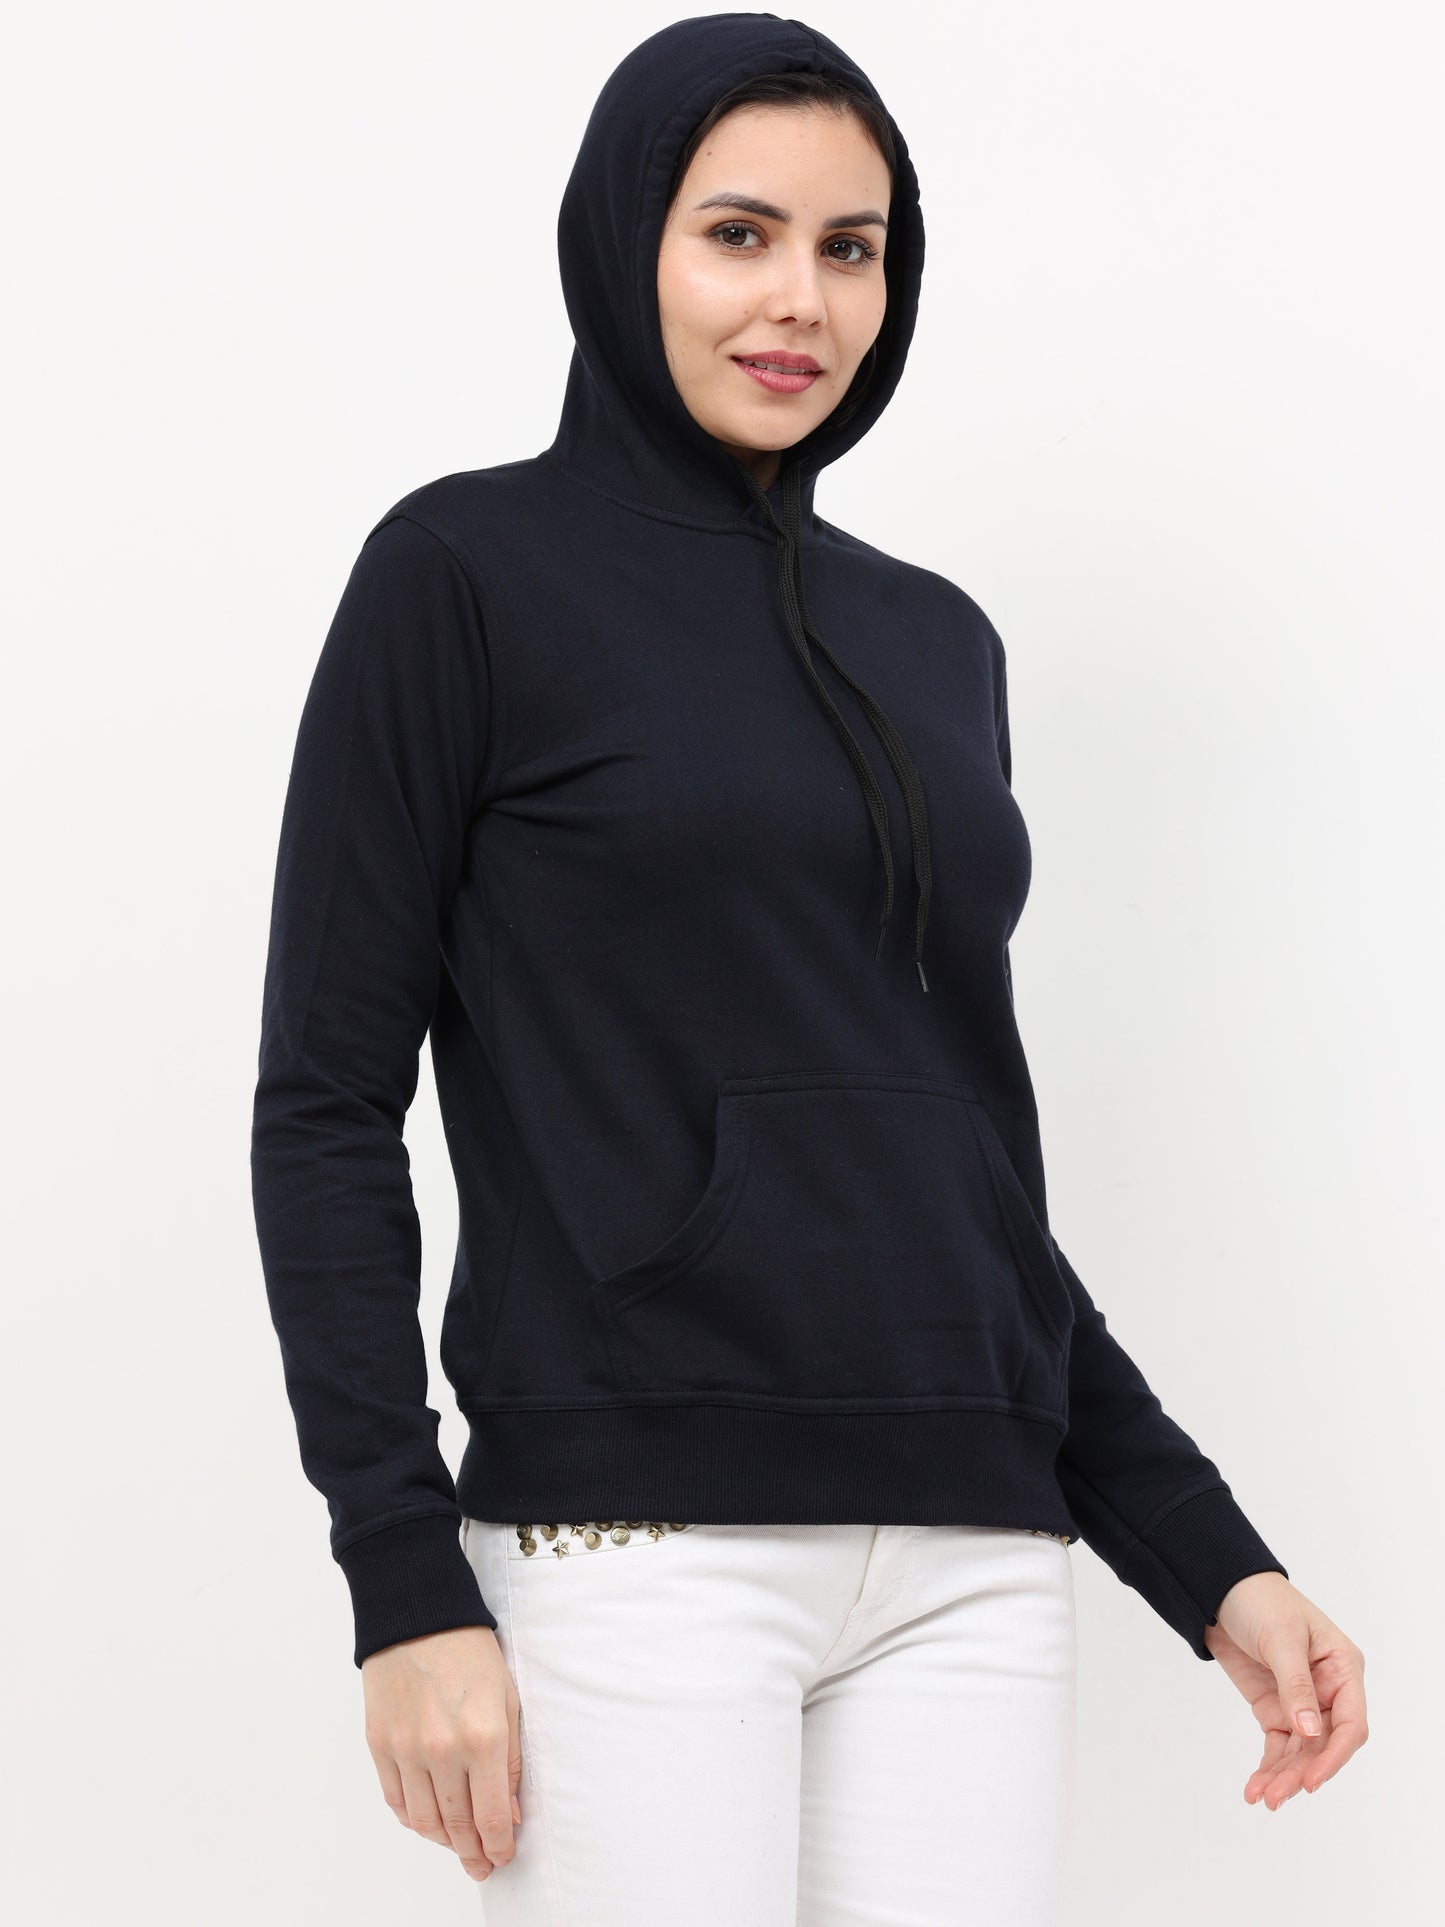 Women's Cotton Plain Navy Blue Color Sweatshirt Hoodies